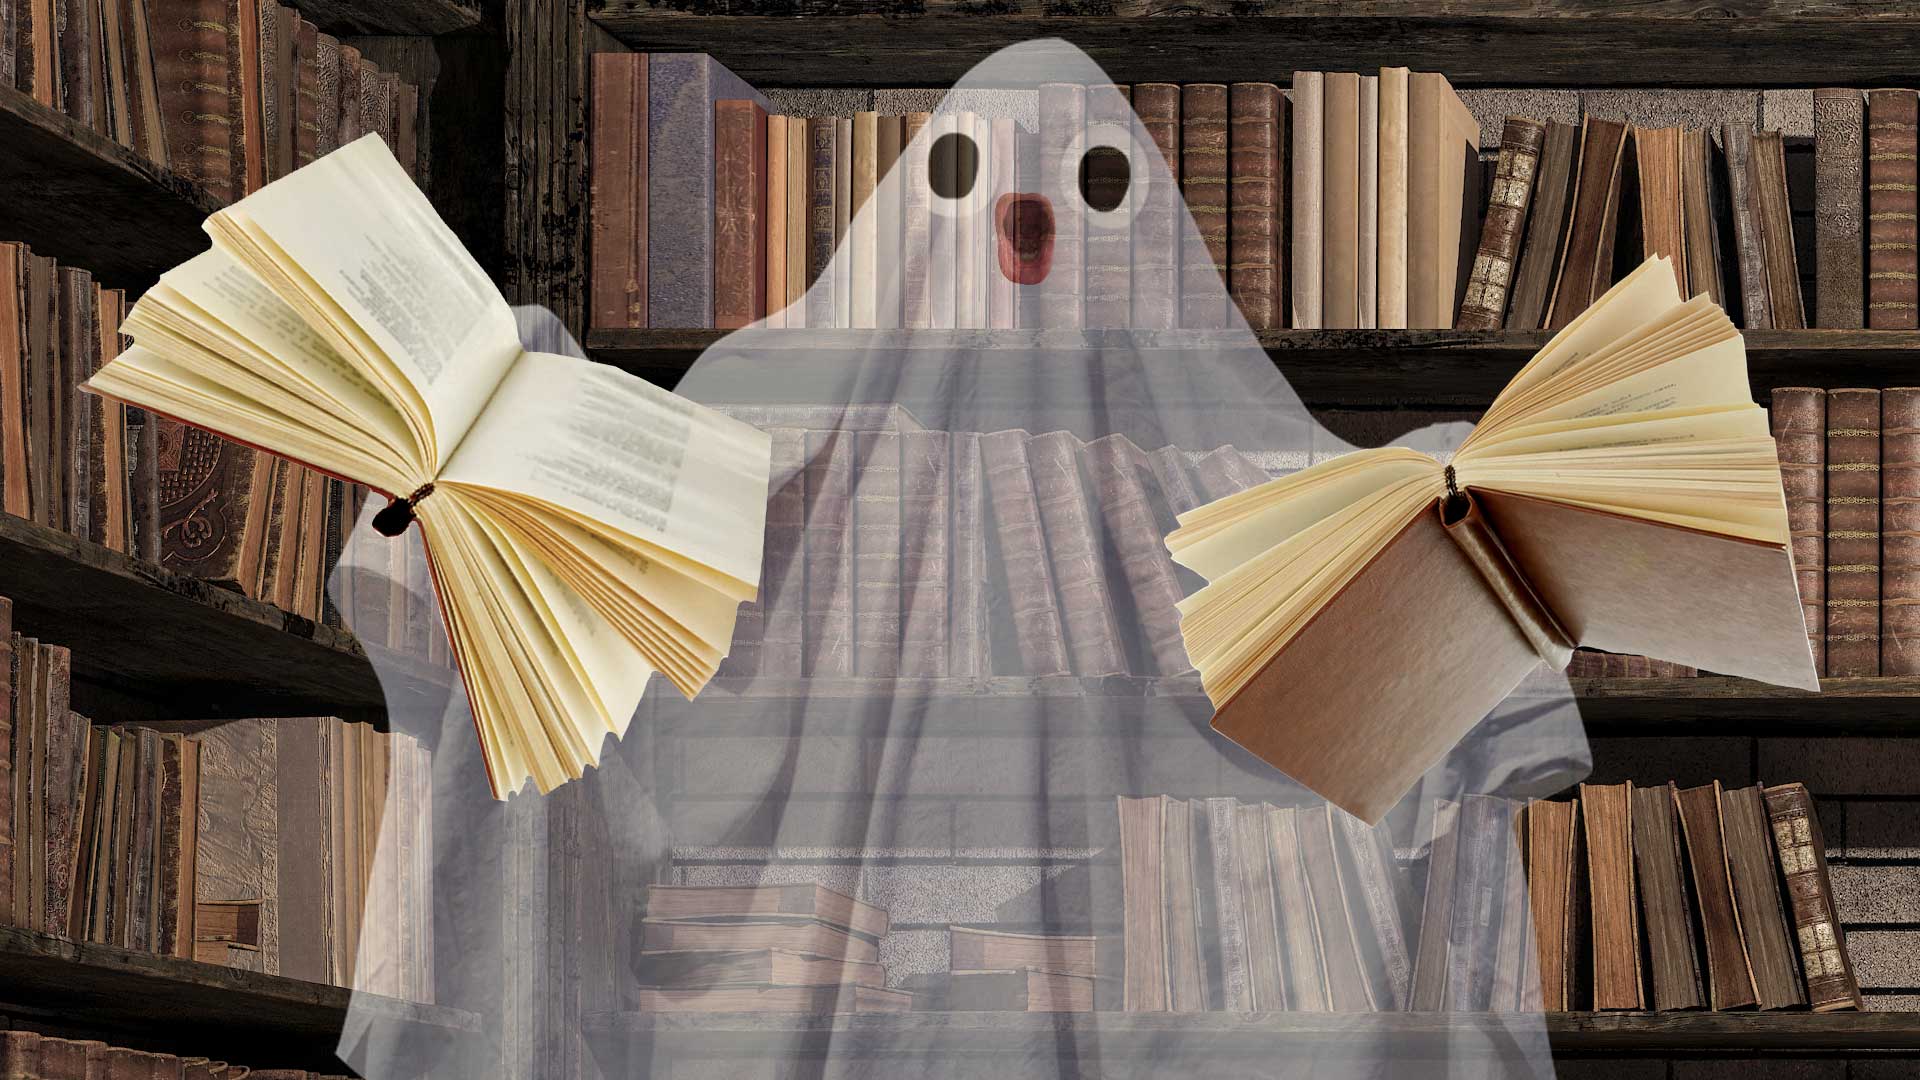 A haunted book shop